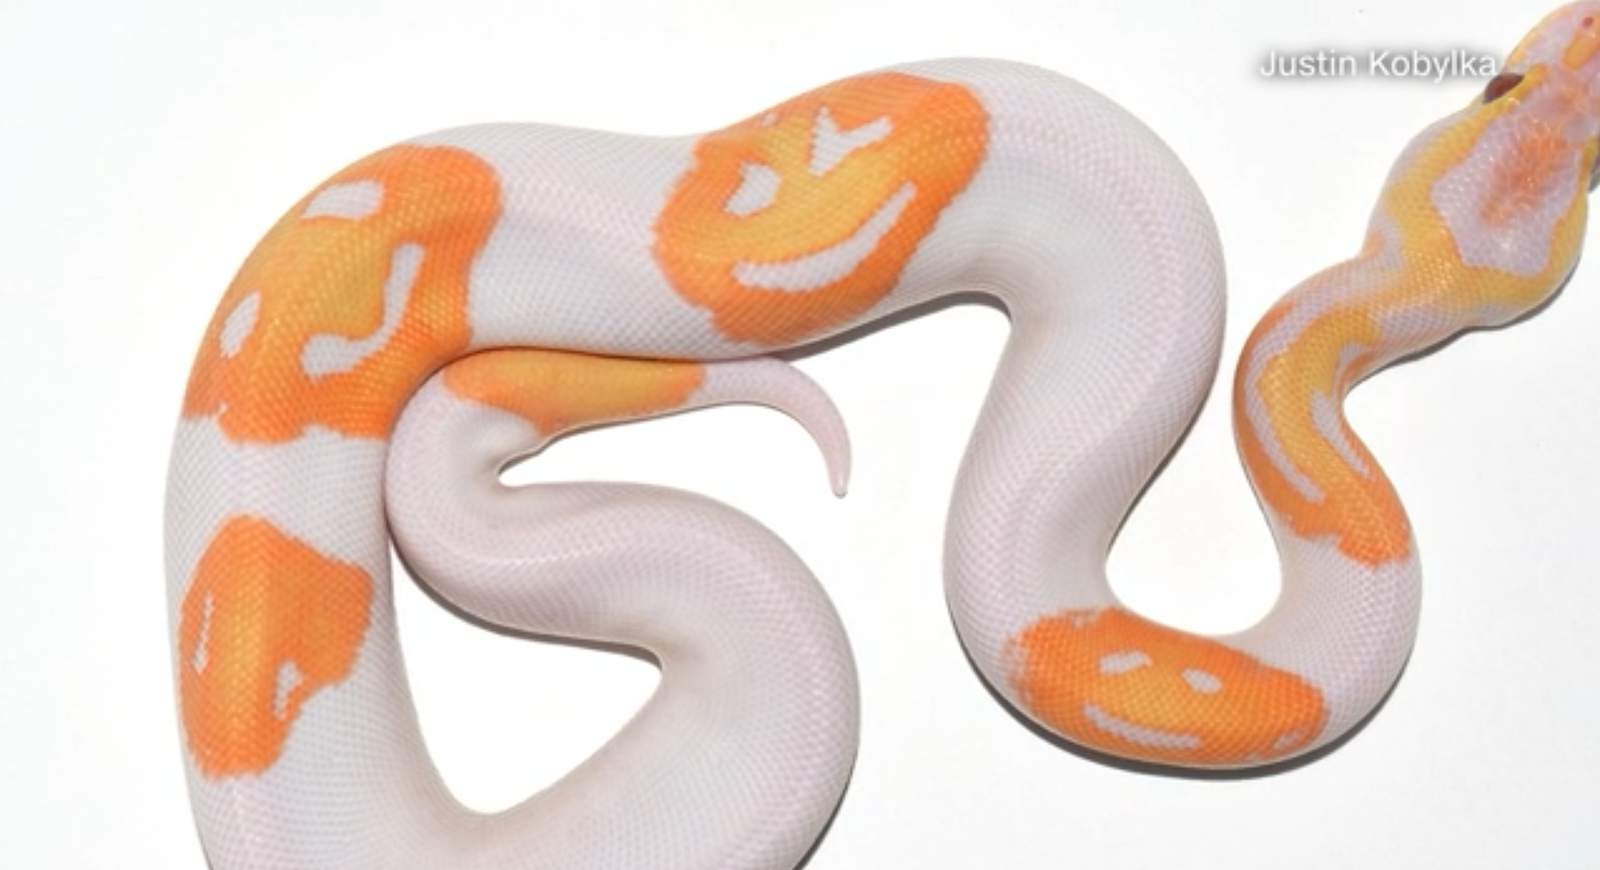 Man breeds smiling emoji snake, sells for $6,000